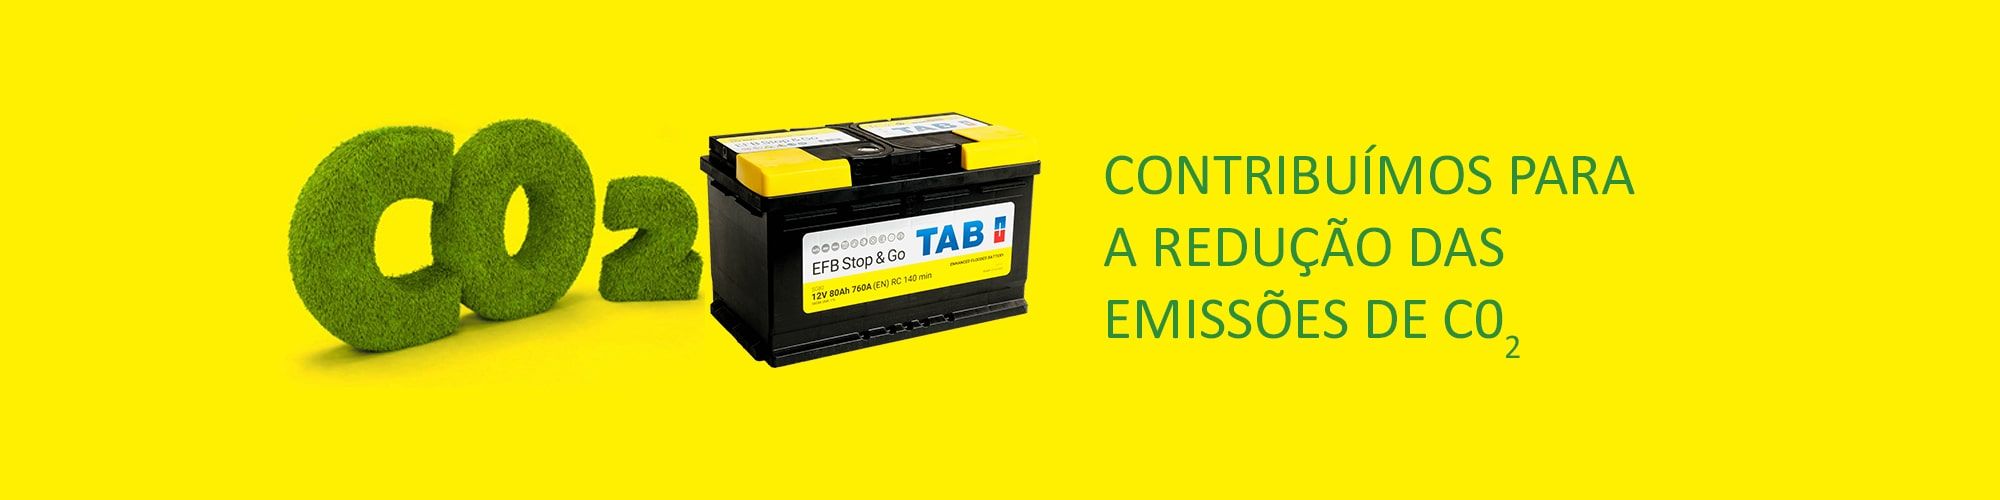 Baterías TAB EFB - Contribuímos para a redução das emissões de CO2